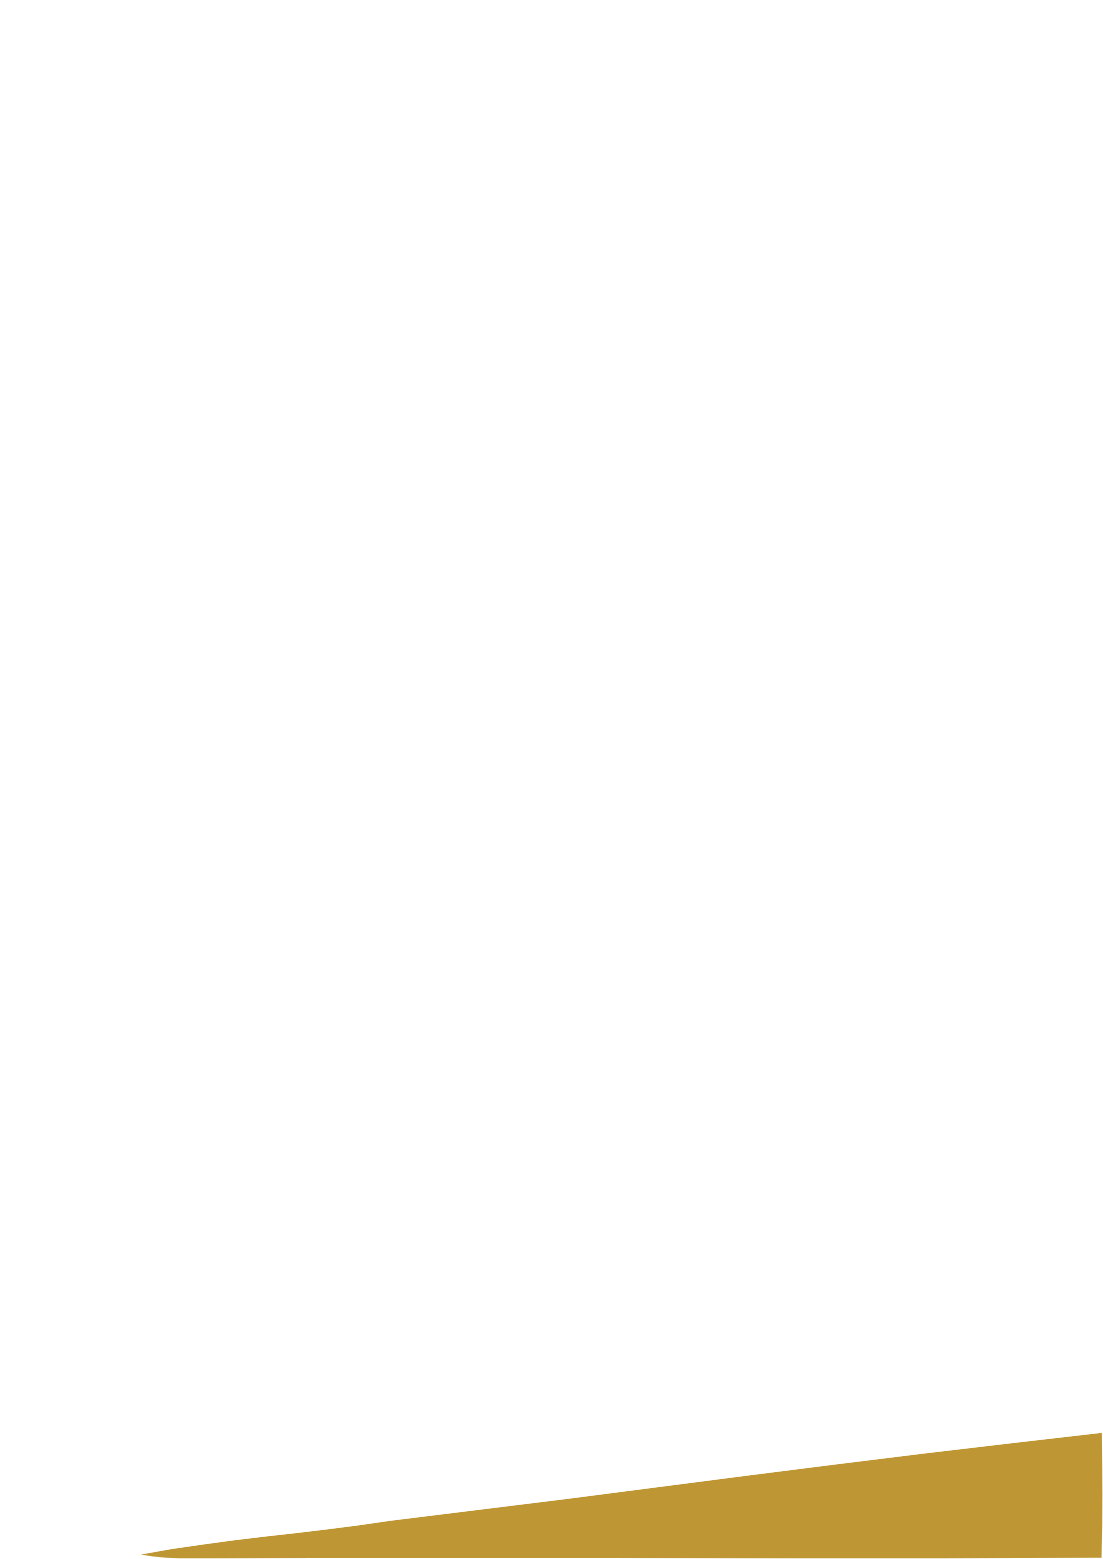 Lundin Gold logo pour fonds sombres (PNG transparent)